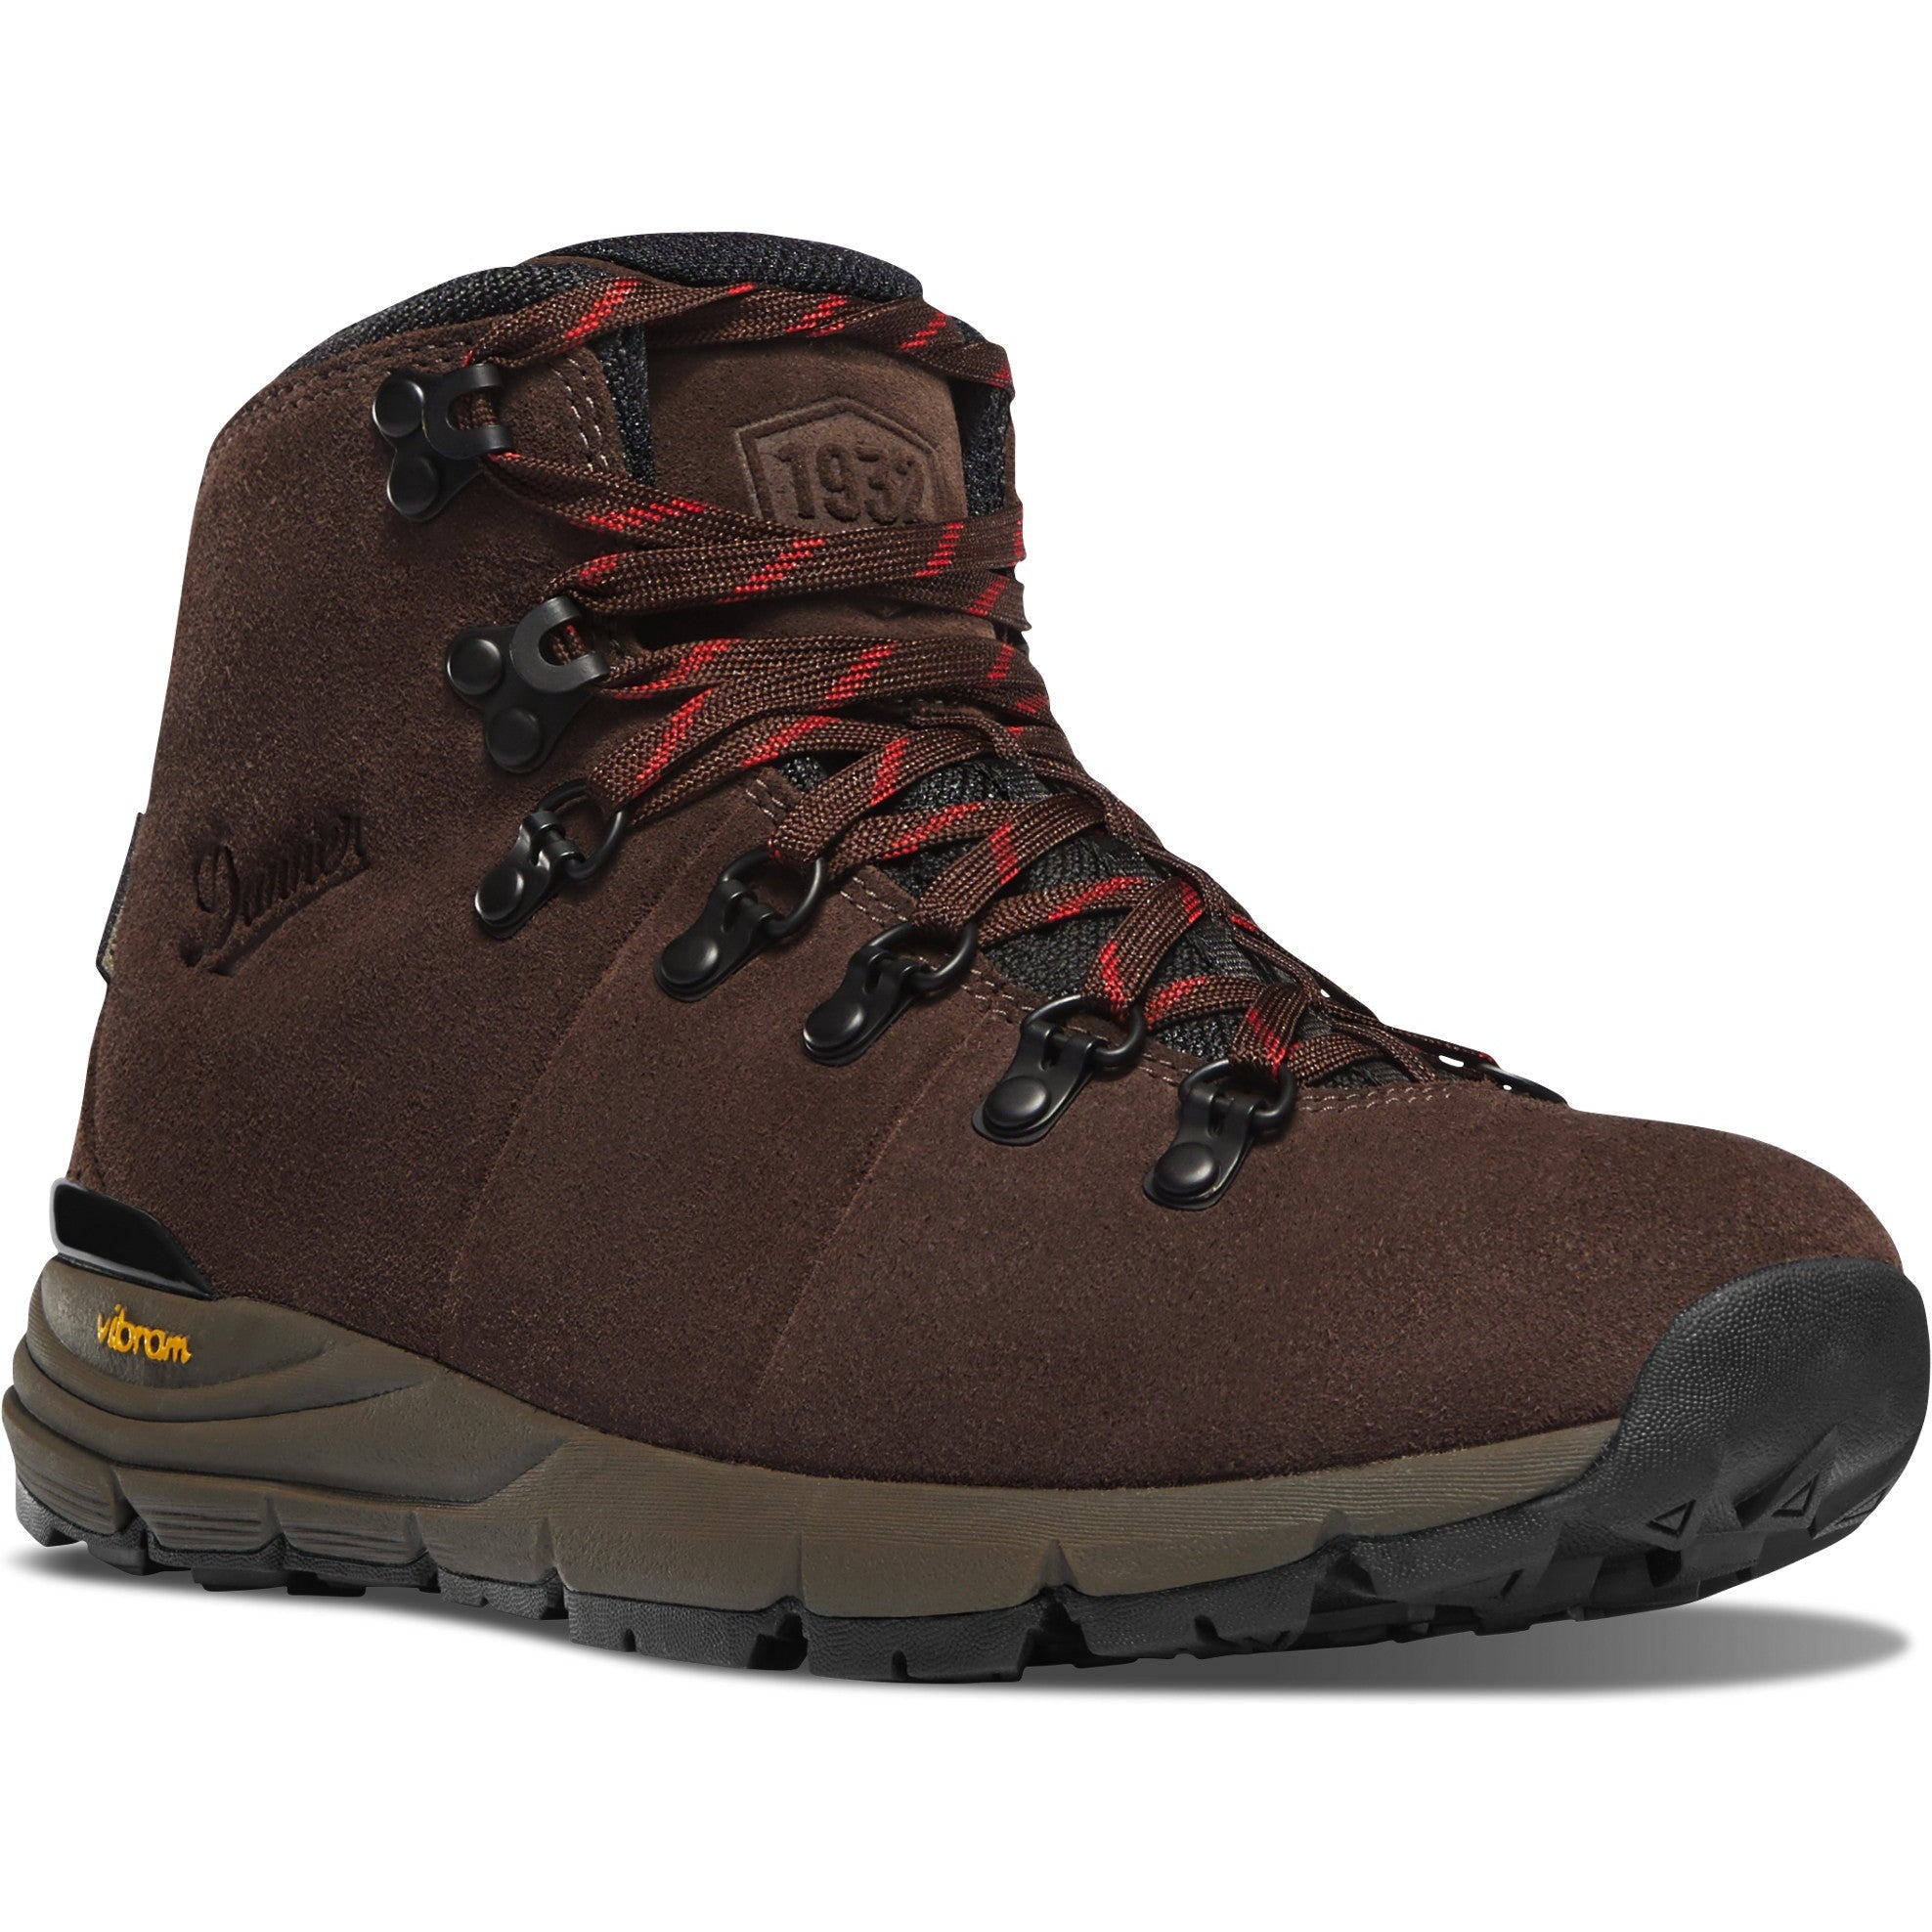 Danner Women's Mountain 600 4.5" WP Hiking Boot - Java - 36235 5.5 / Medium / Brown - Overlook Boots